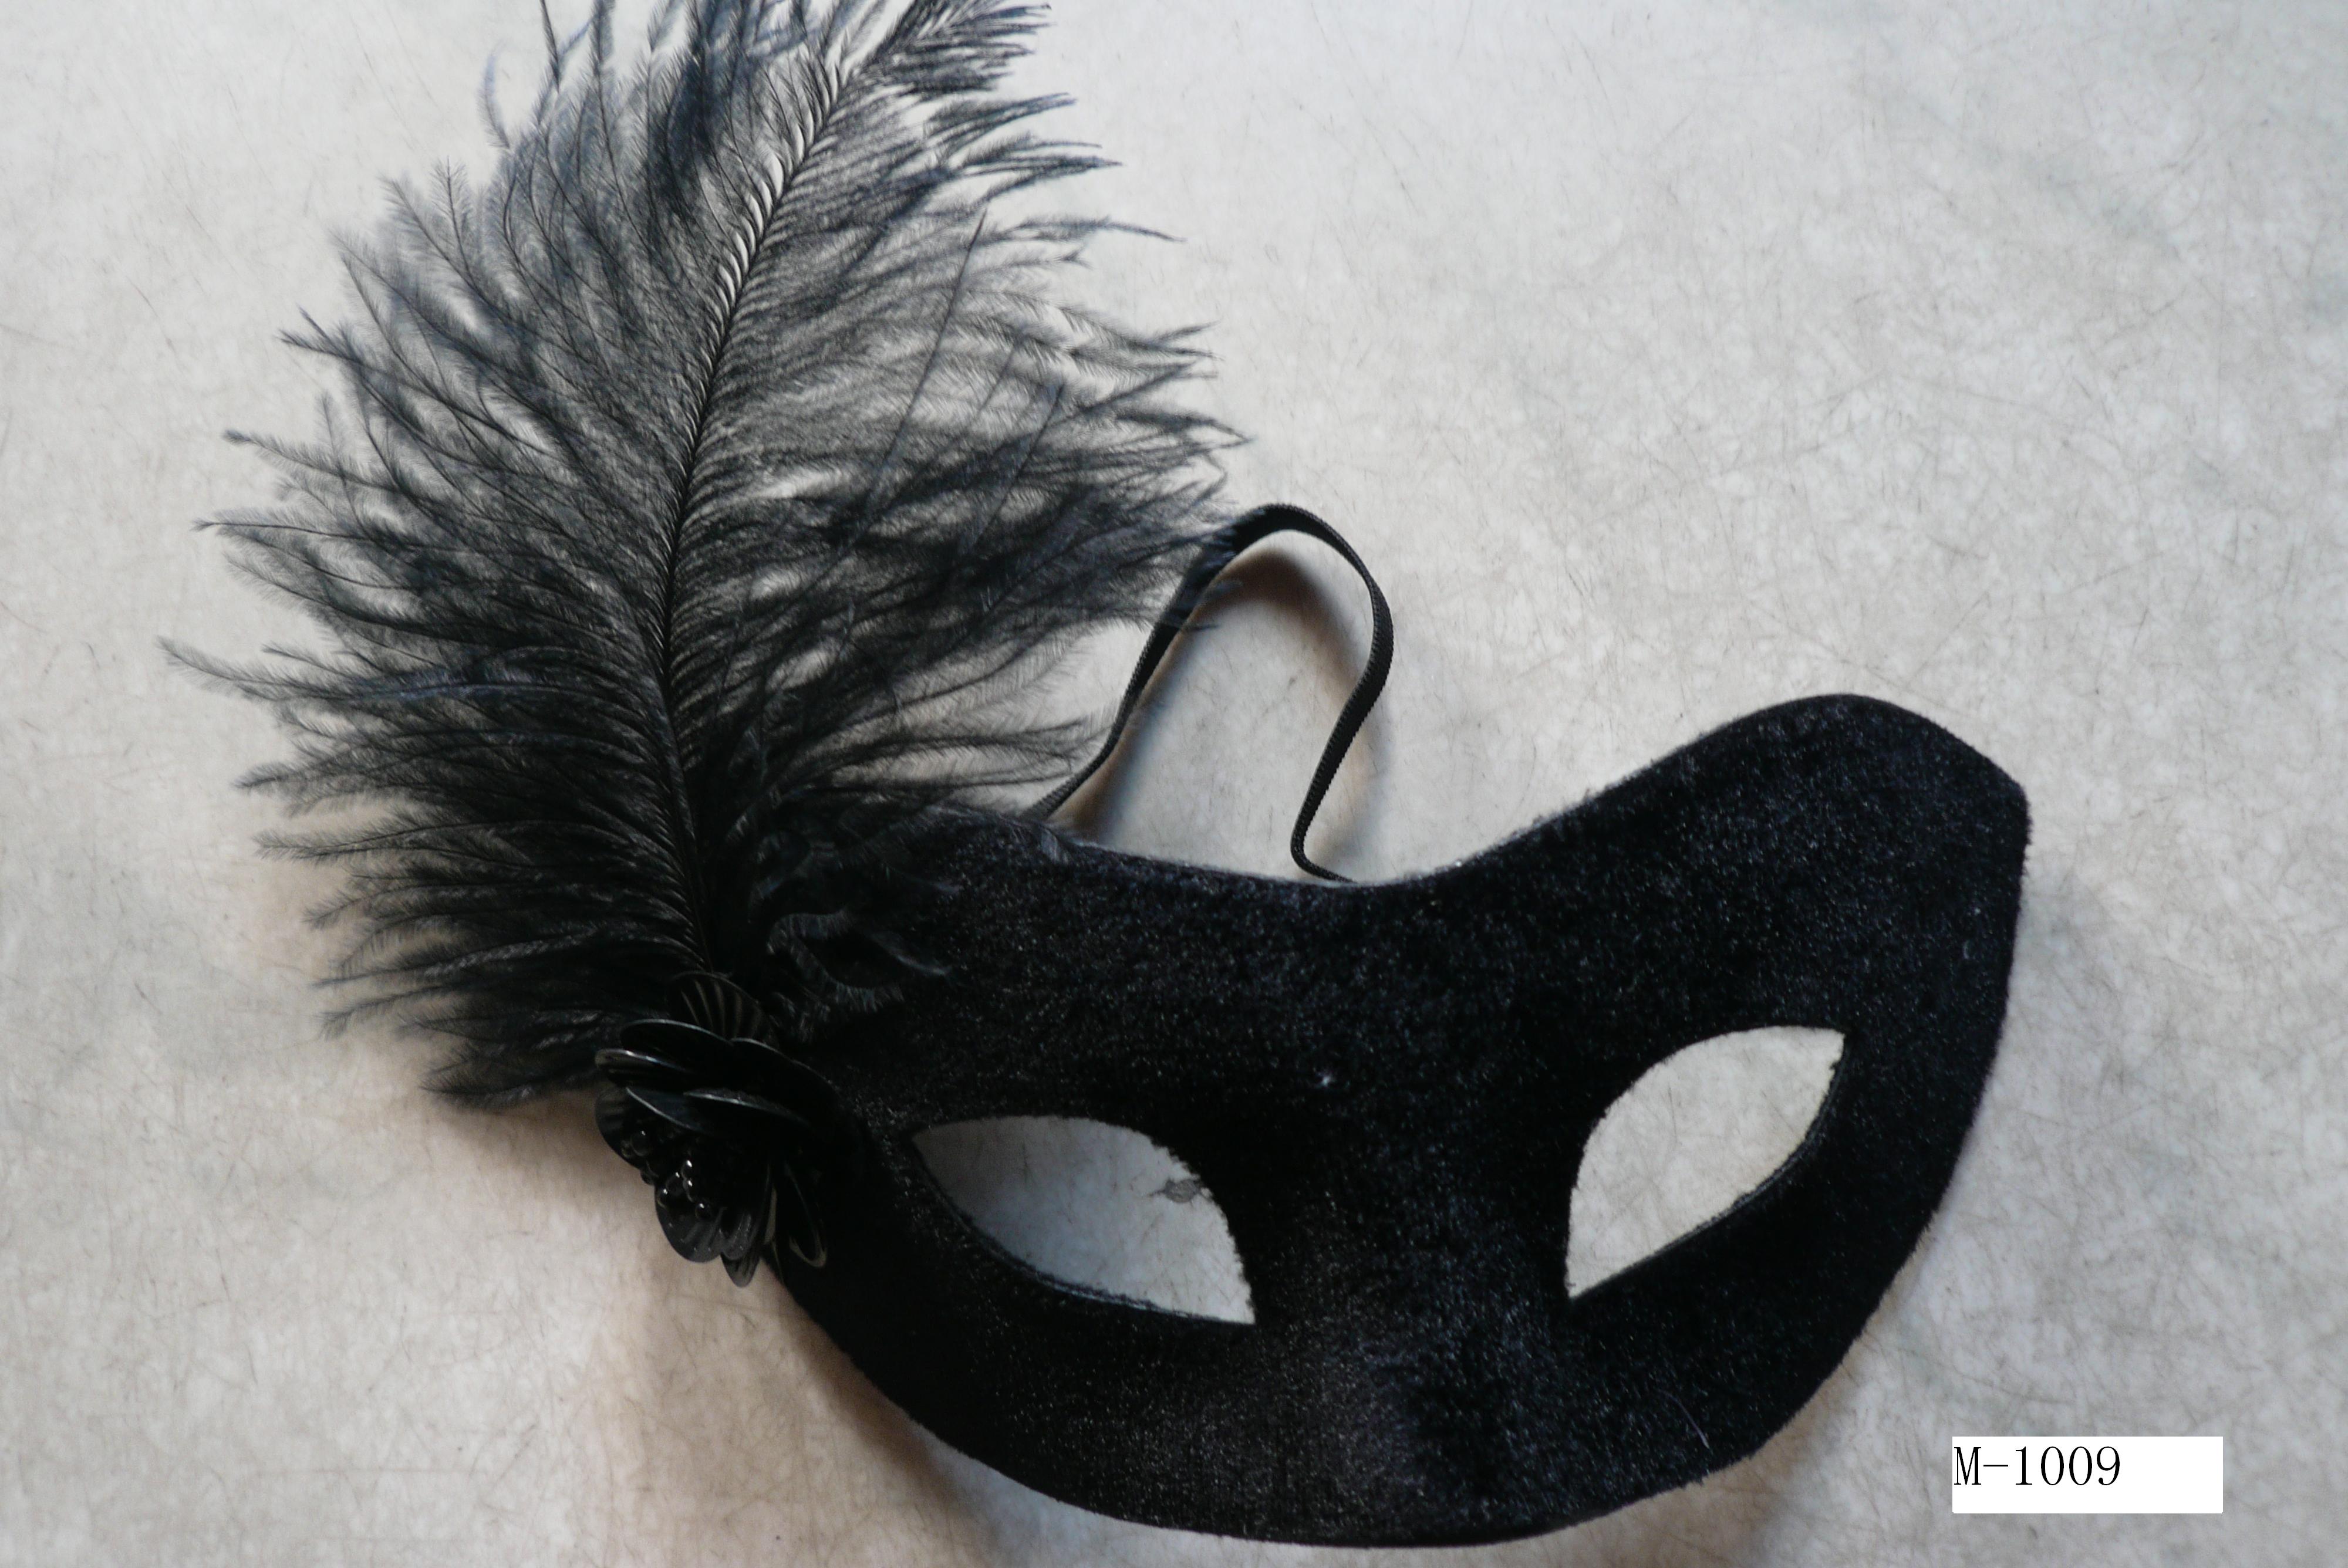  Дешевые маски из перьев для продажи - Сделано в Китае M-1009